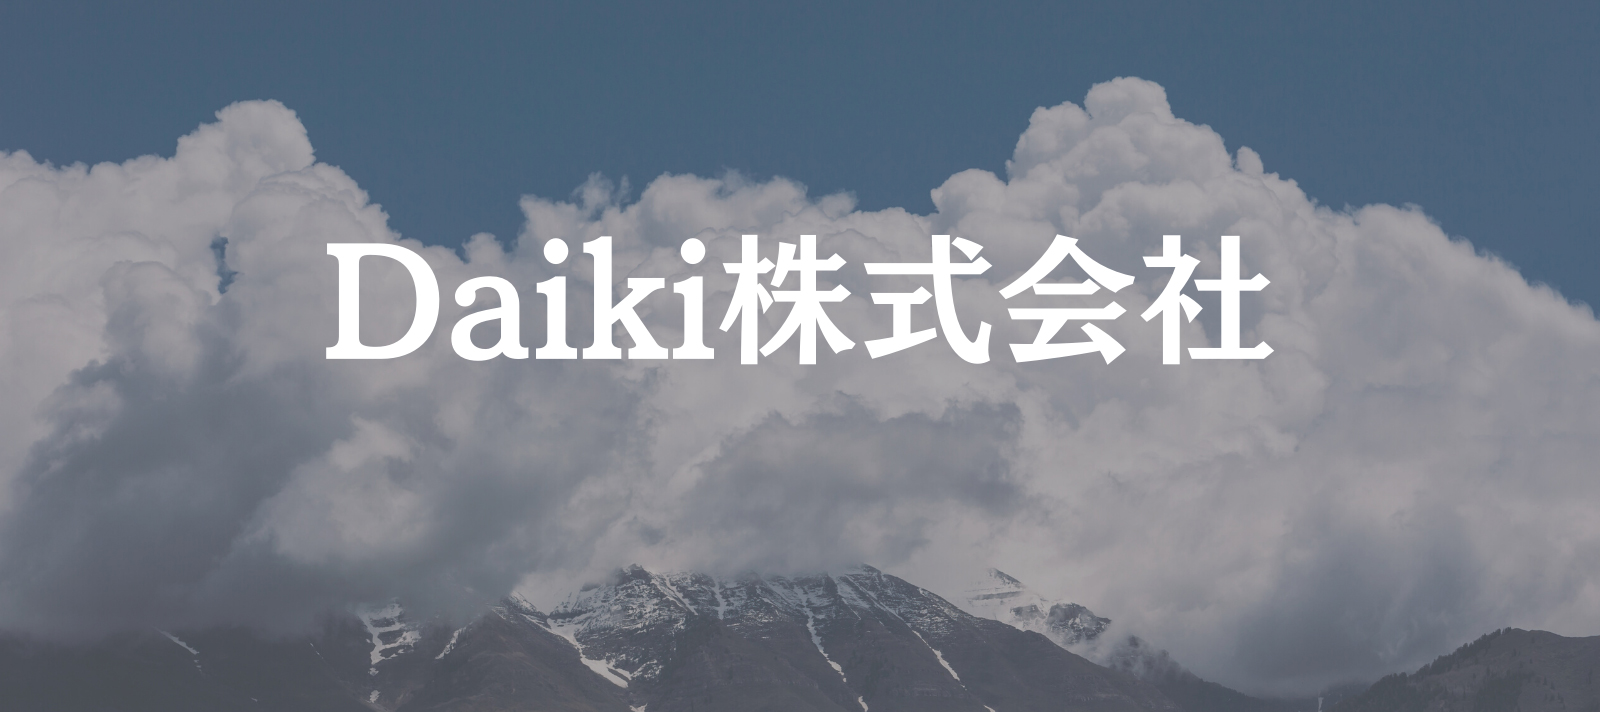 Daiki公式サイト